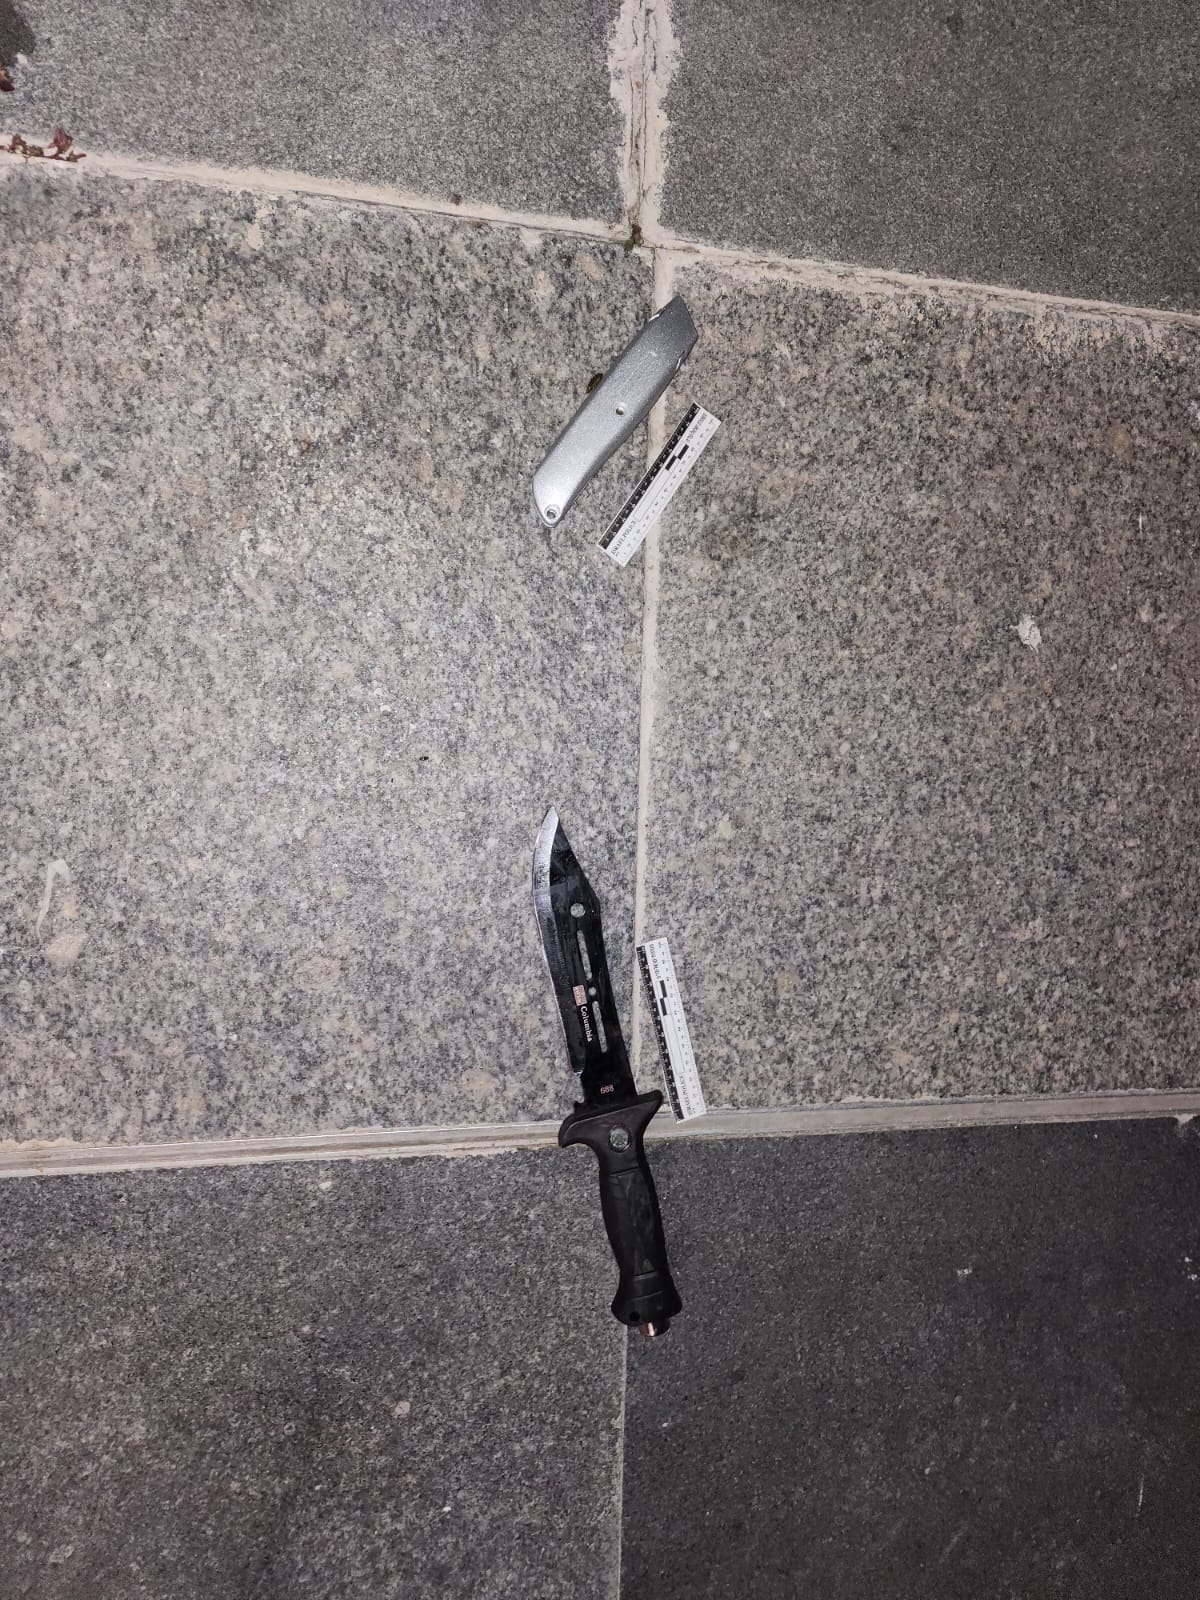 הסכינים שהשתמש בהם המחבל בפיגוע בגן יבנה (צילום: דוברות המשטרה)